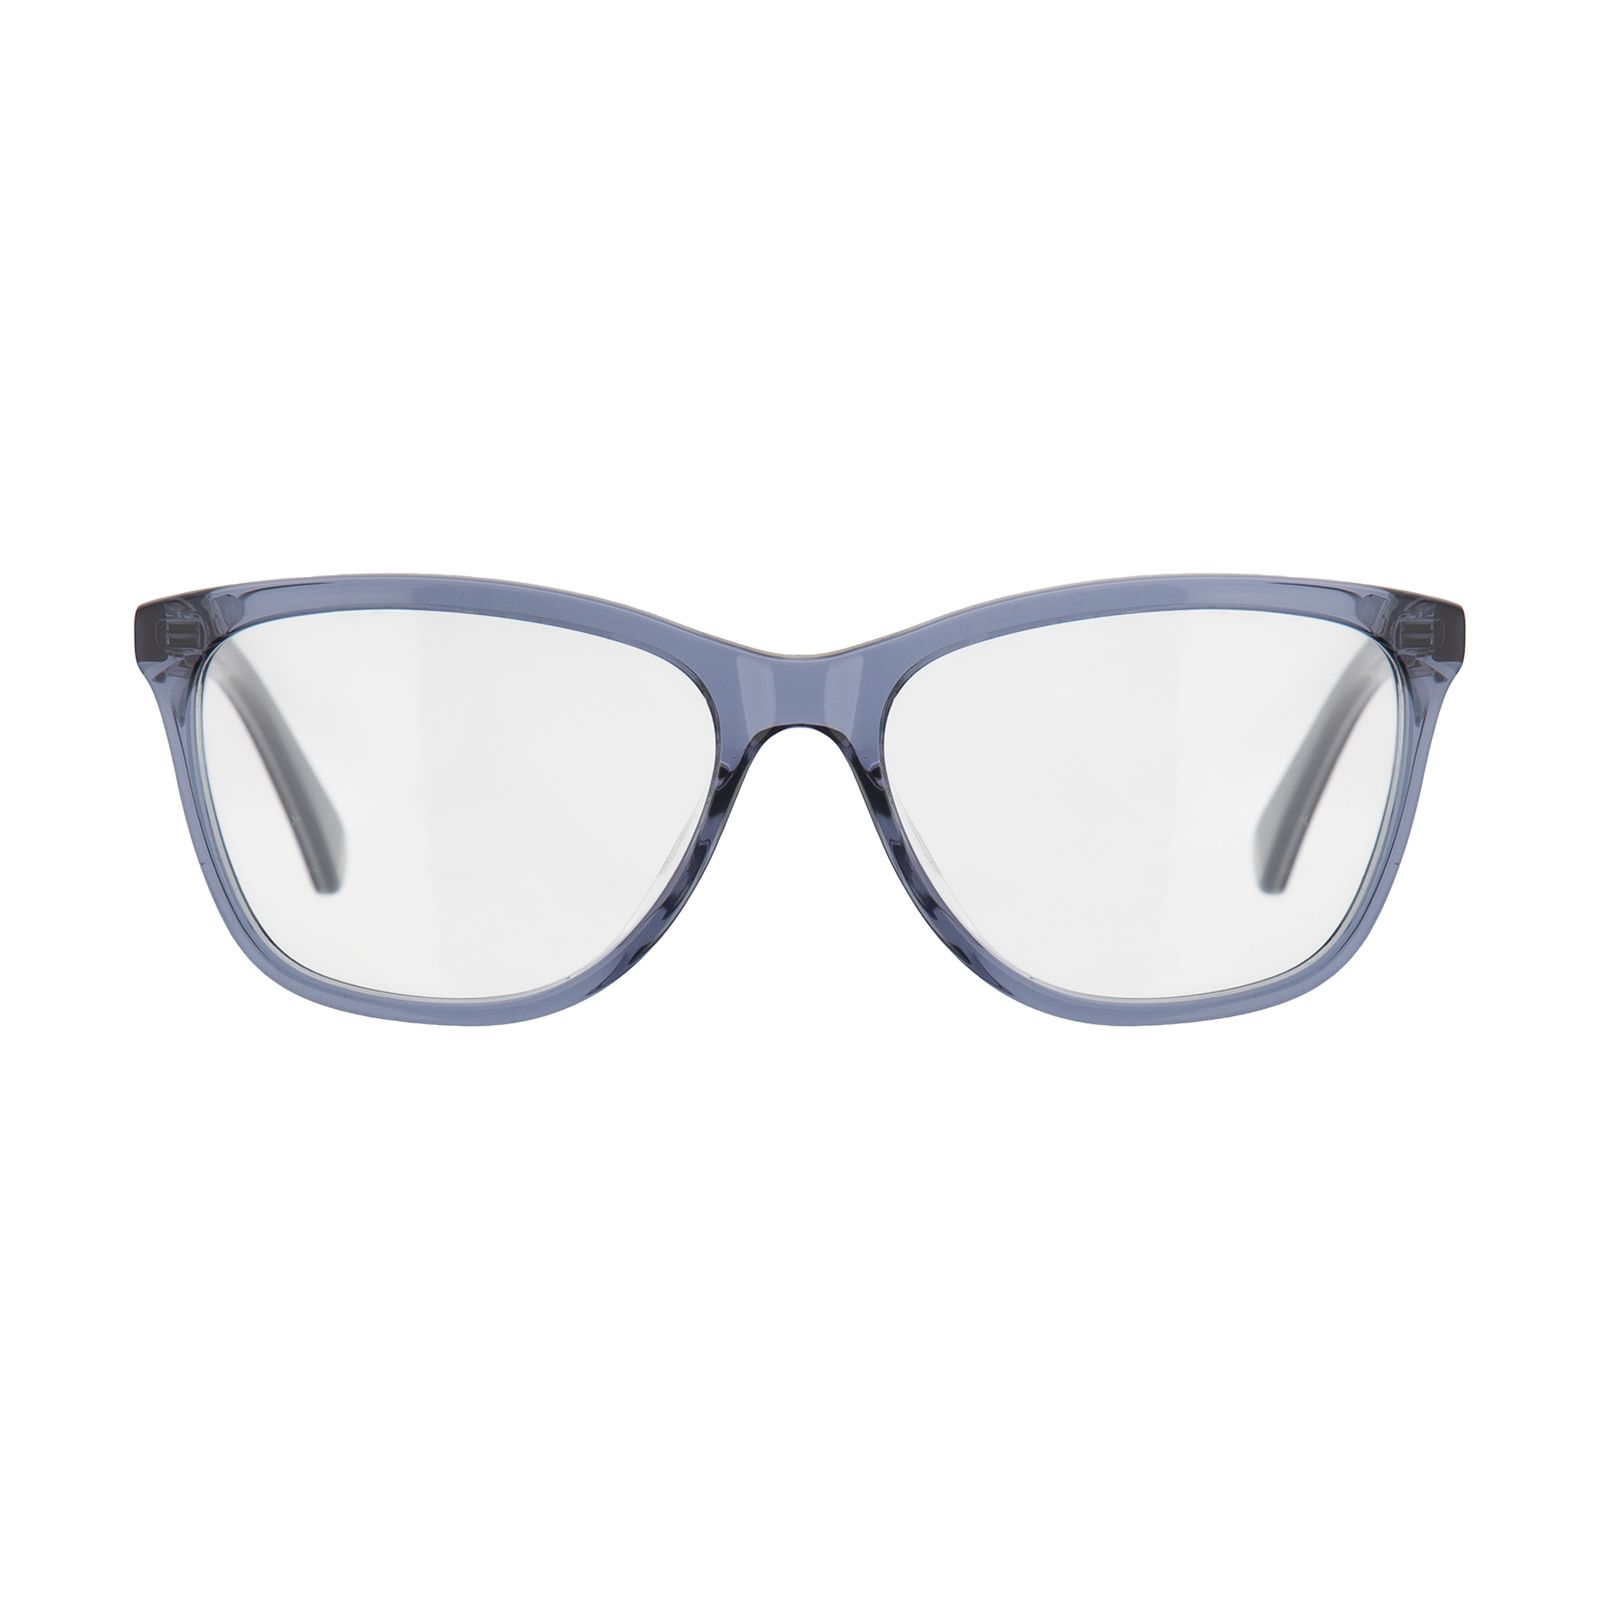 فریم عینک طبی زنانه پلیس مدل VPL760M-0955 -  - 1